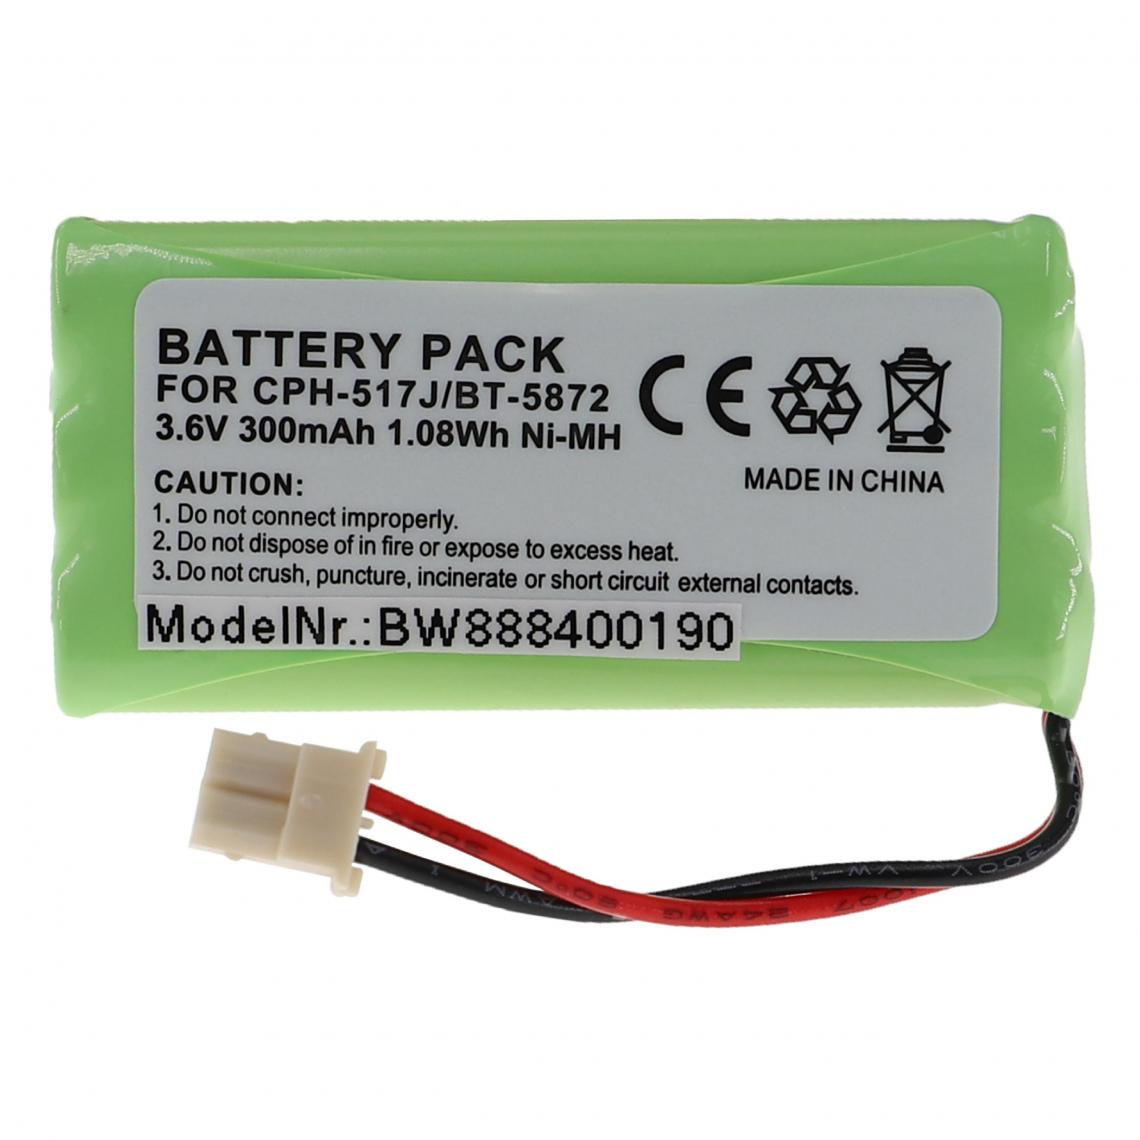 Vhbw - vhbw Batterie remplacement pour 89-1333-01-00, BT5632, BT5872, CPH-517J pour téléphone fixe sans fil (300mAh, 3,6V, NiMH) - Batterie téléphone